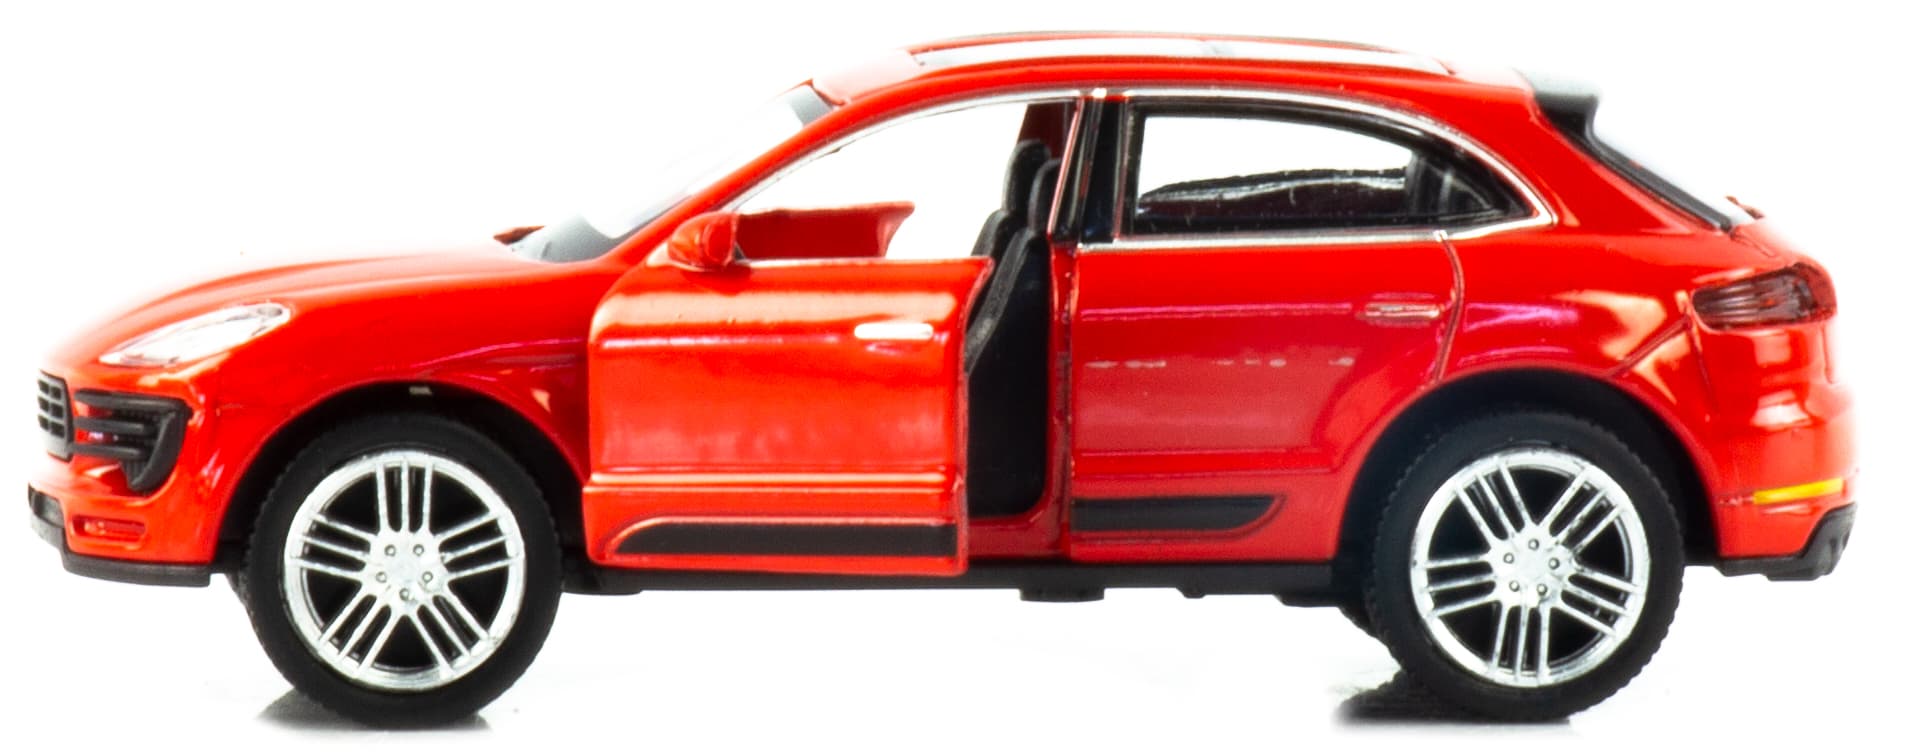 Металлическая машинка Play Smart 1:50 «Porsche Macan» 6527D Fast Wheels, инерционная / Красный